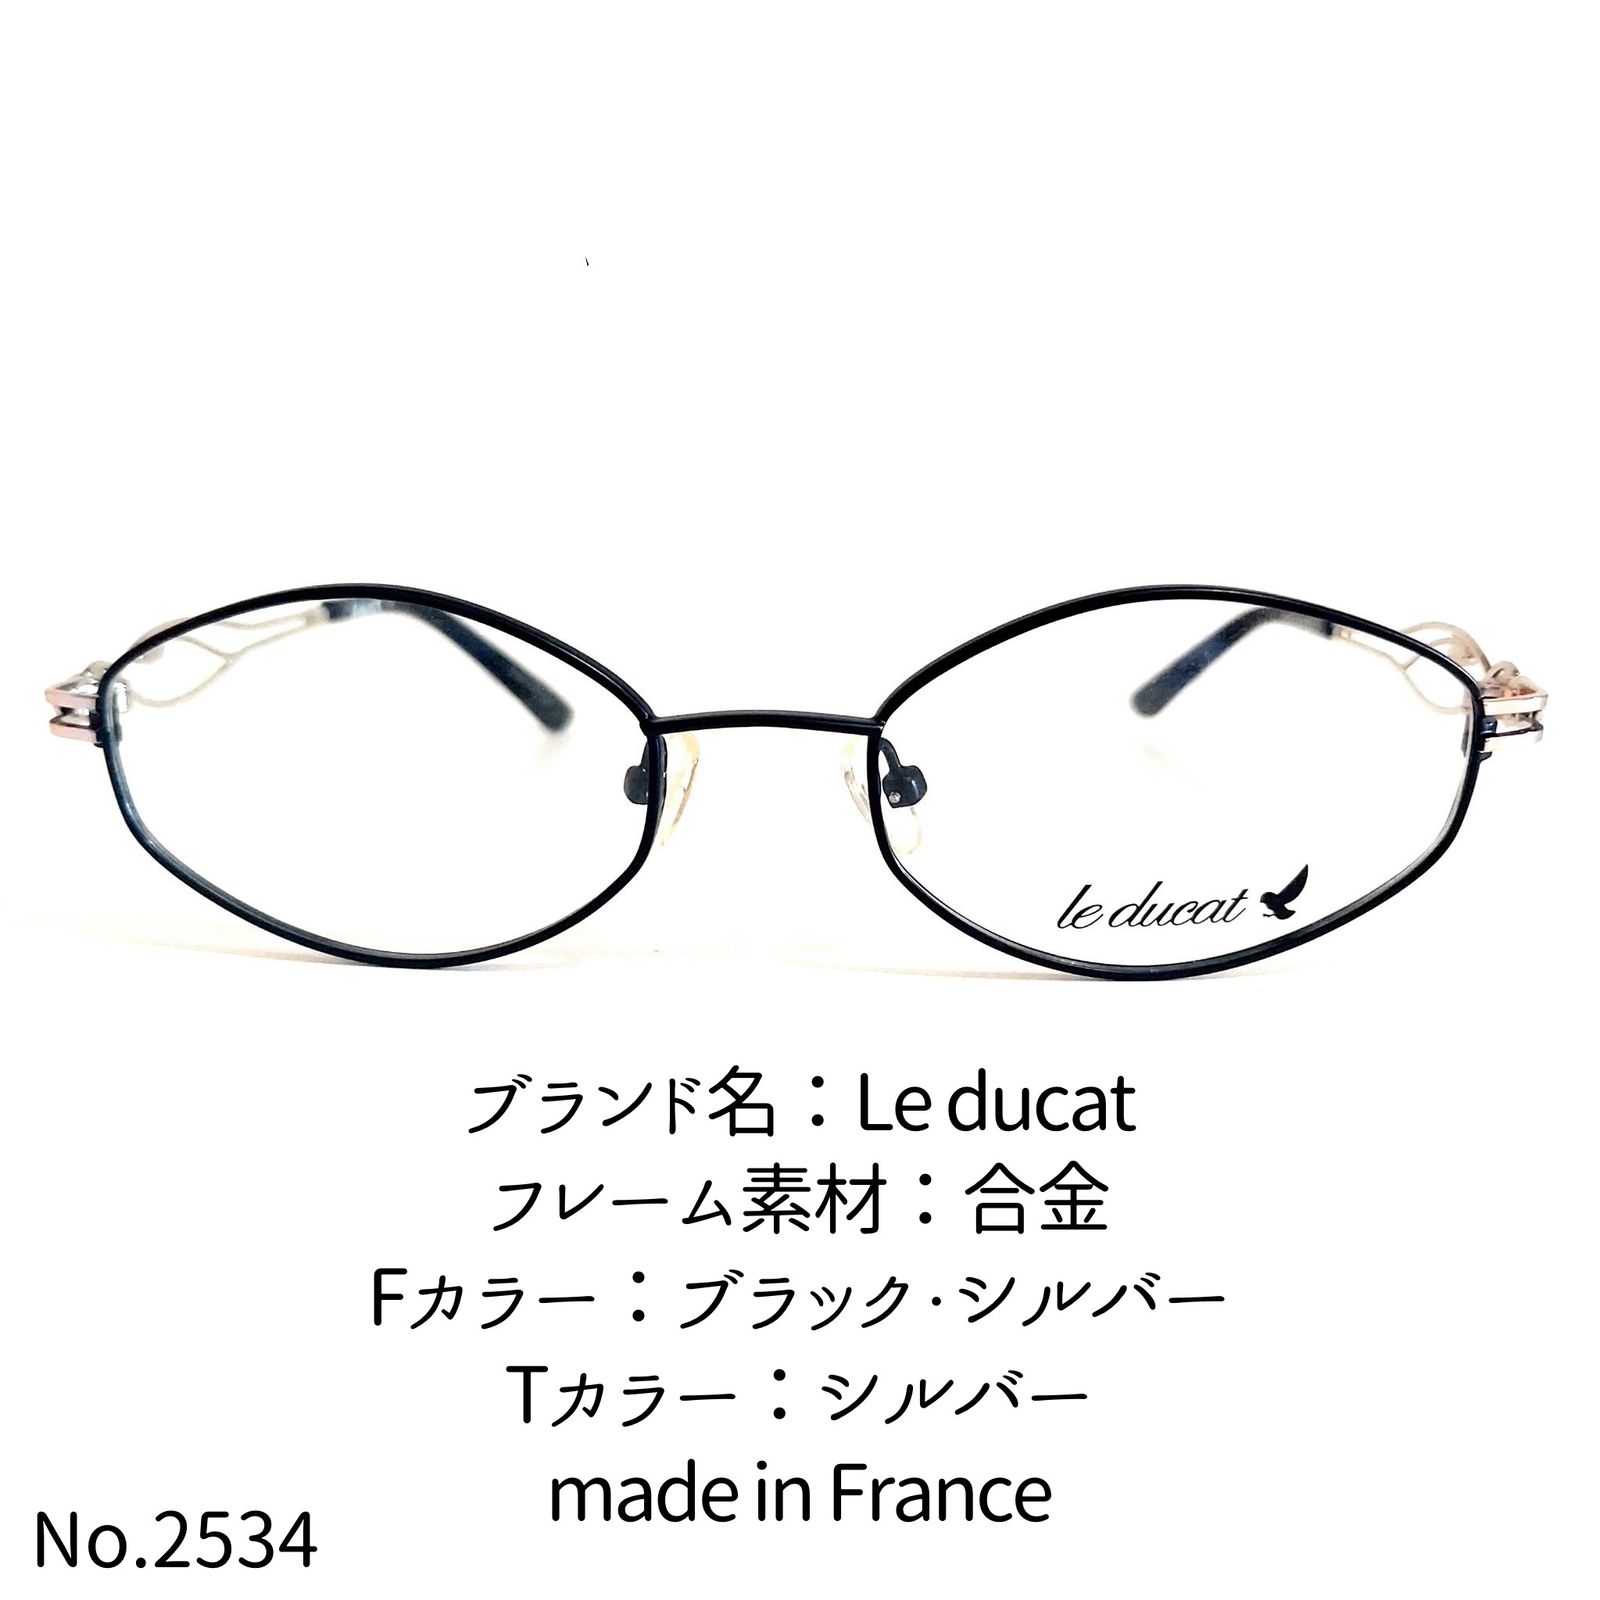 No.2534-メガネ Le ducat【フレームのみ価格】-